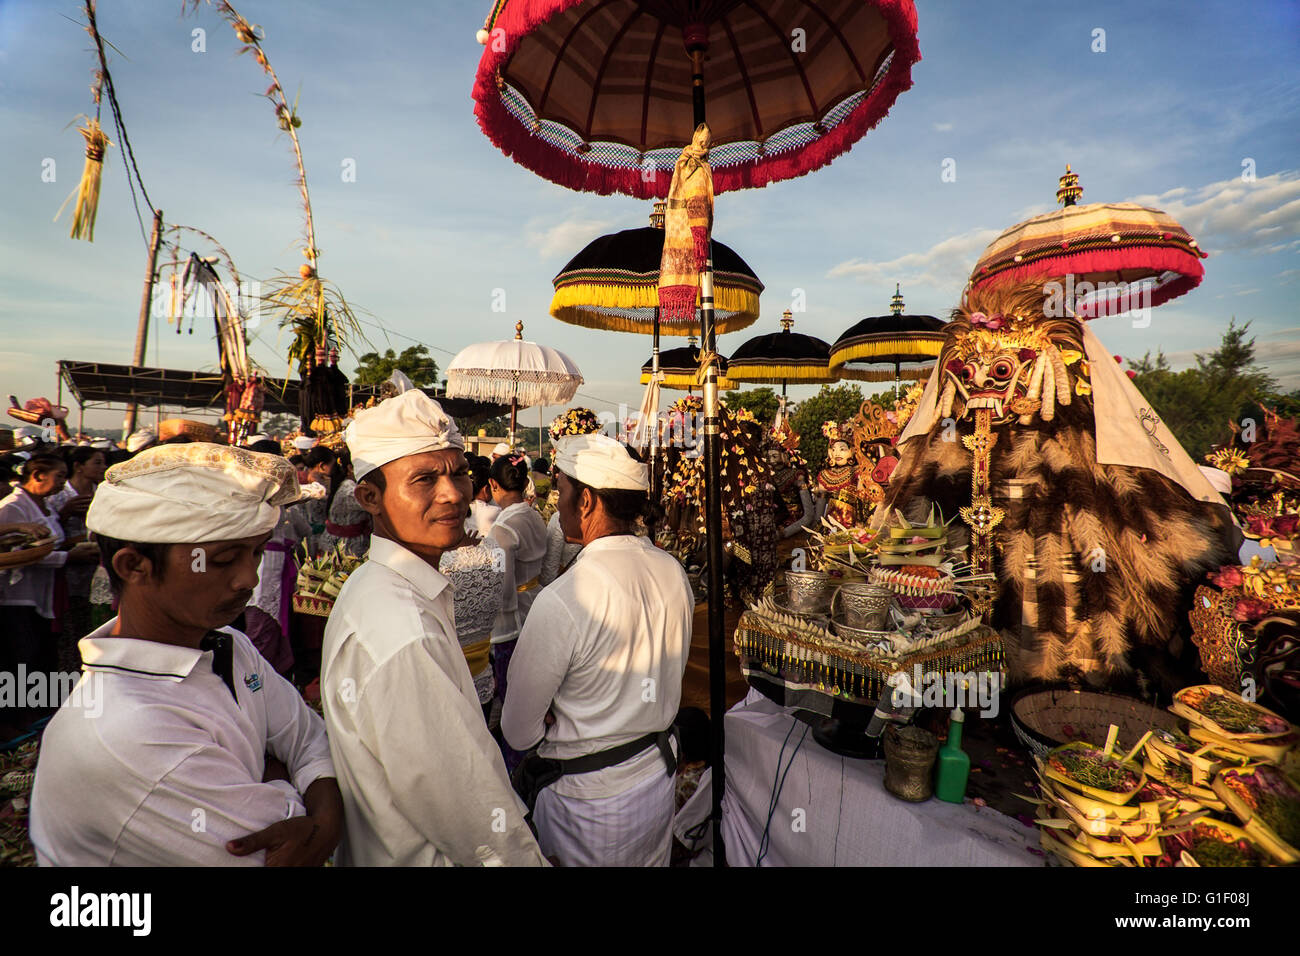 Rangda balinesischen Mythologie wird von vielen Menschen, die Durchführung der Rituale bei der Melasti Zeremonie auf Bali verehrt. Stockfoto